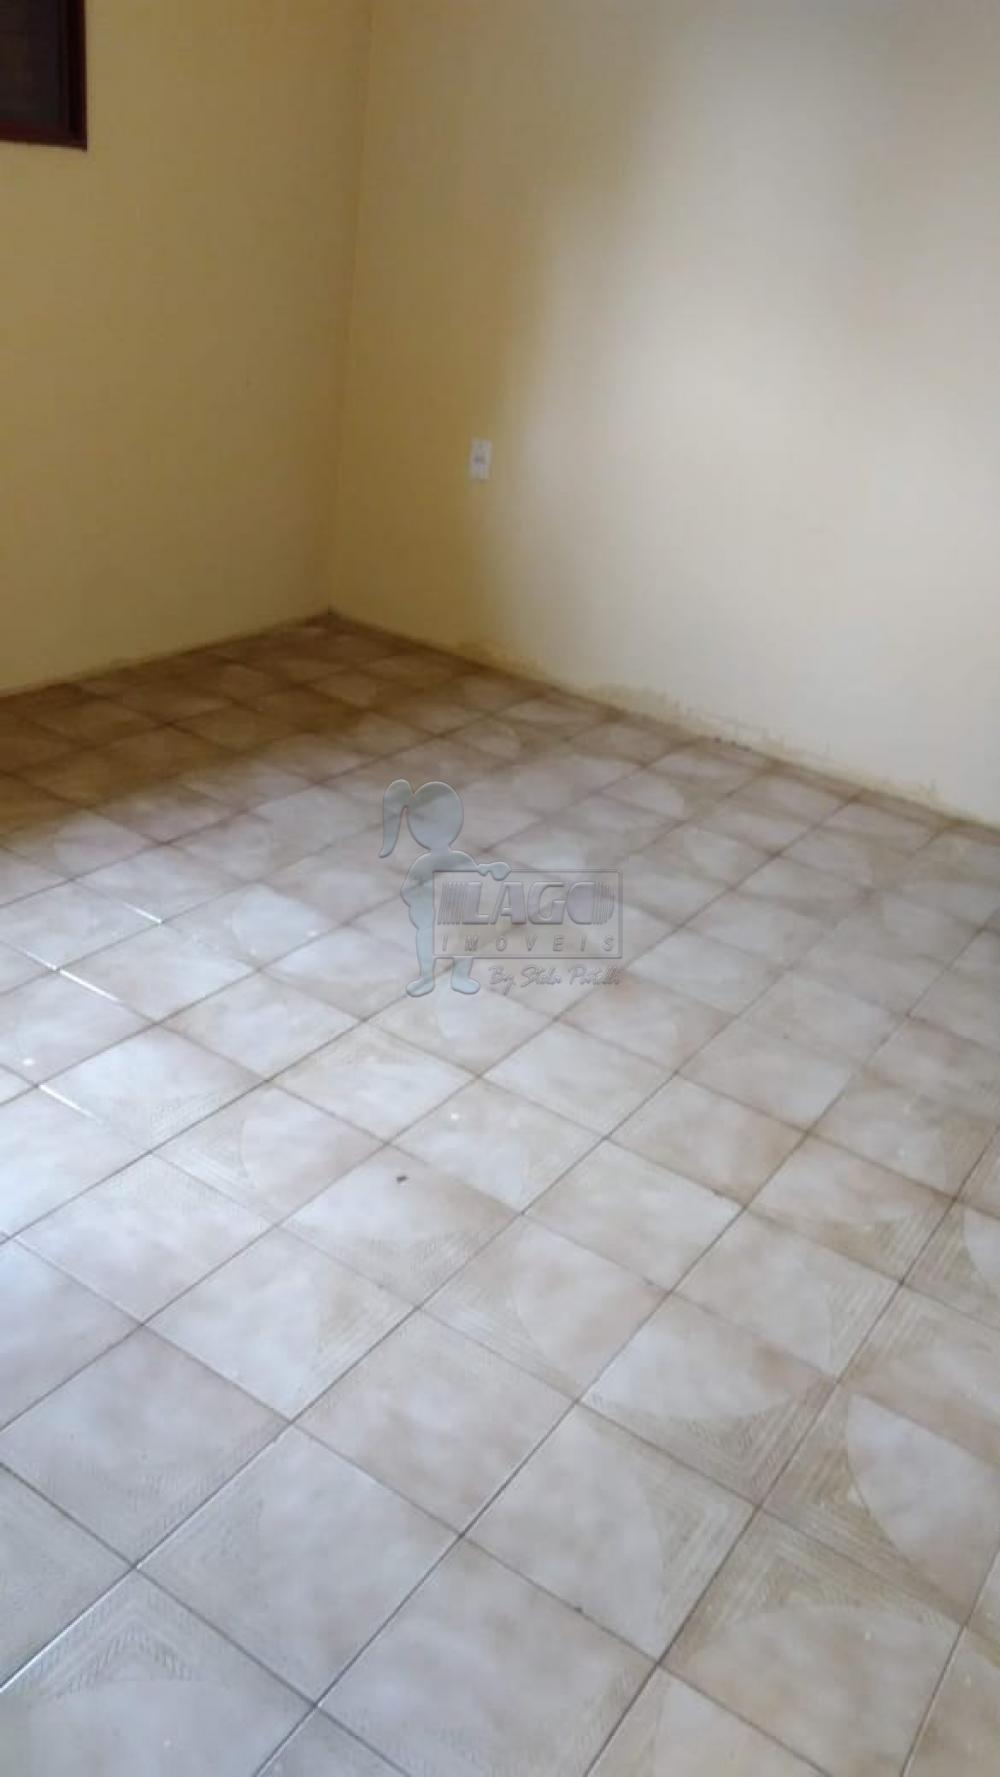 Comprar Casas / Padrão em Ribeirão Preto R$ 320.000,00 - Foto 7